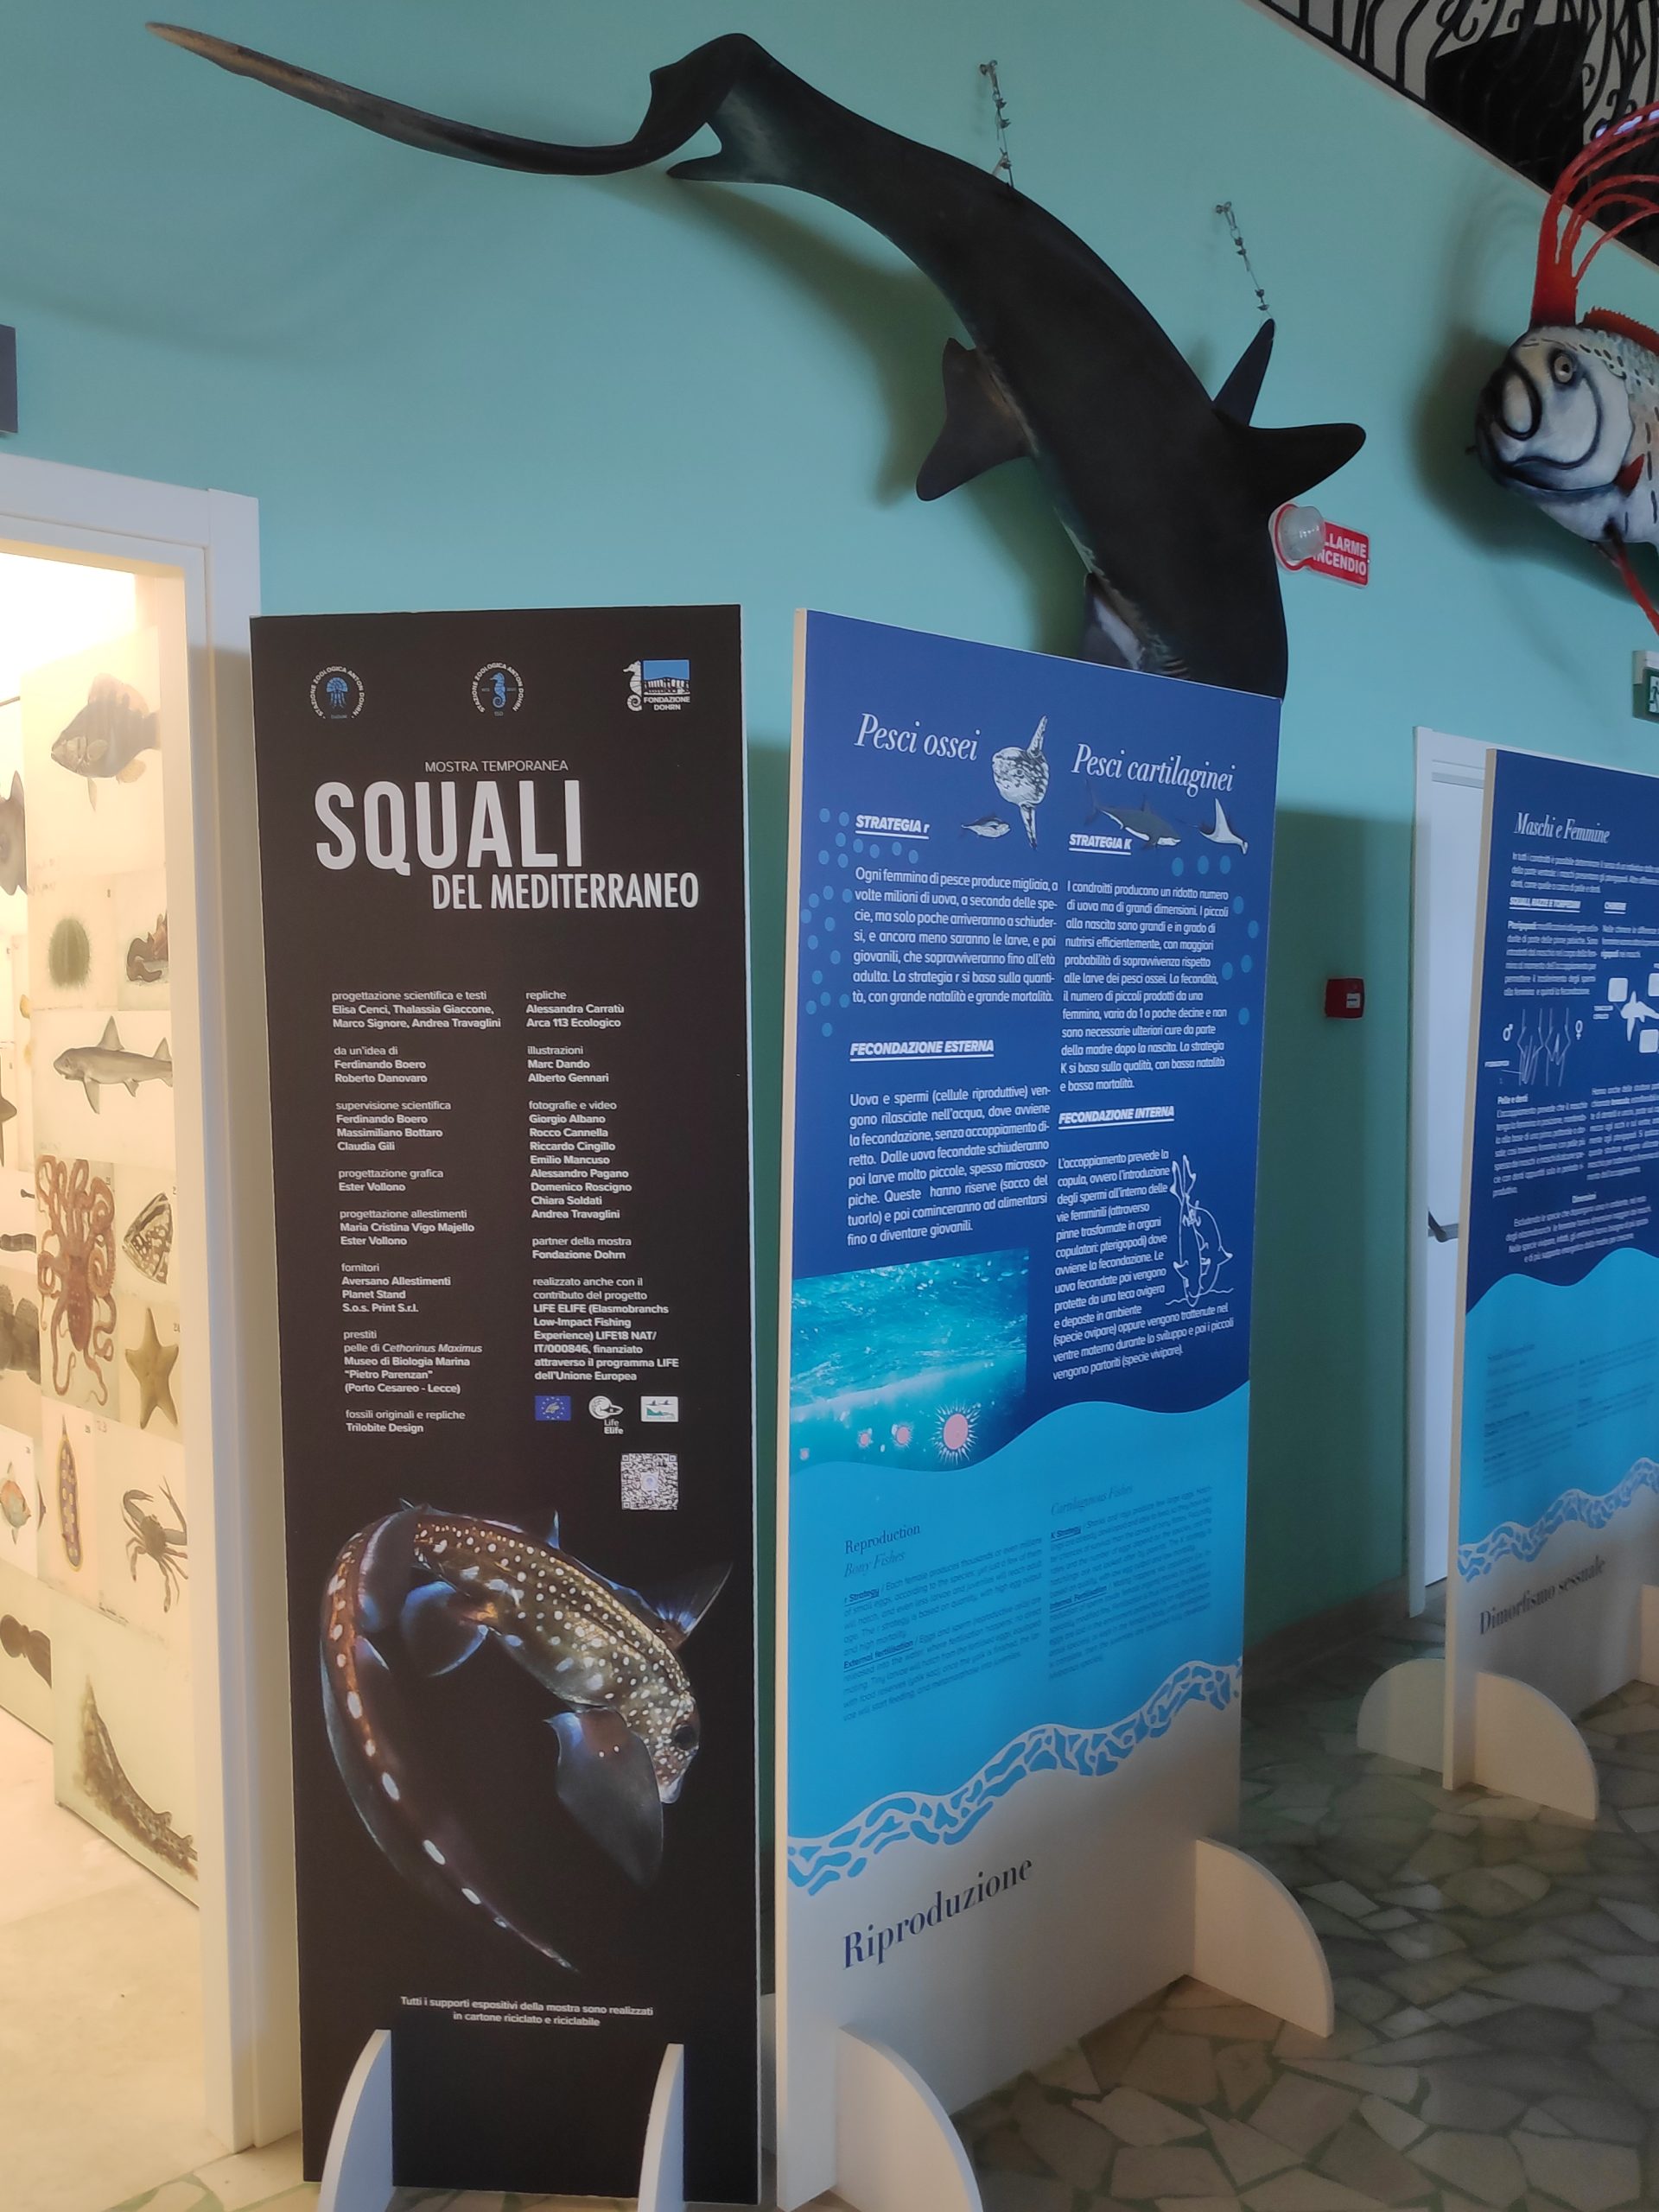 Napoli: Stazione zoologica Anton Dohrn inaugura “Squali del Mediterraneo”,  I mostra temporanea Museo Darwin-Dohrn